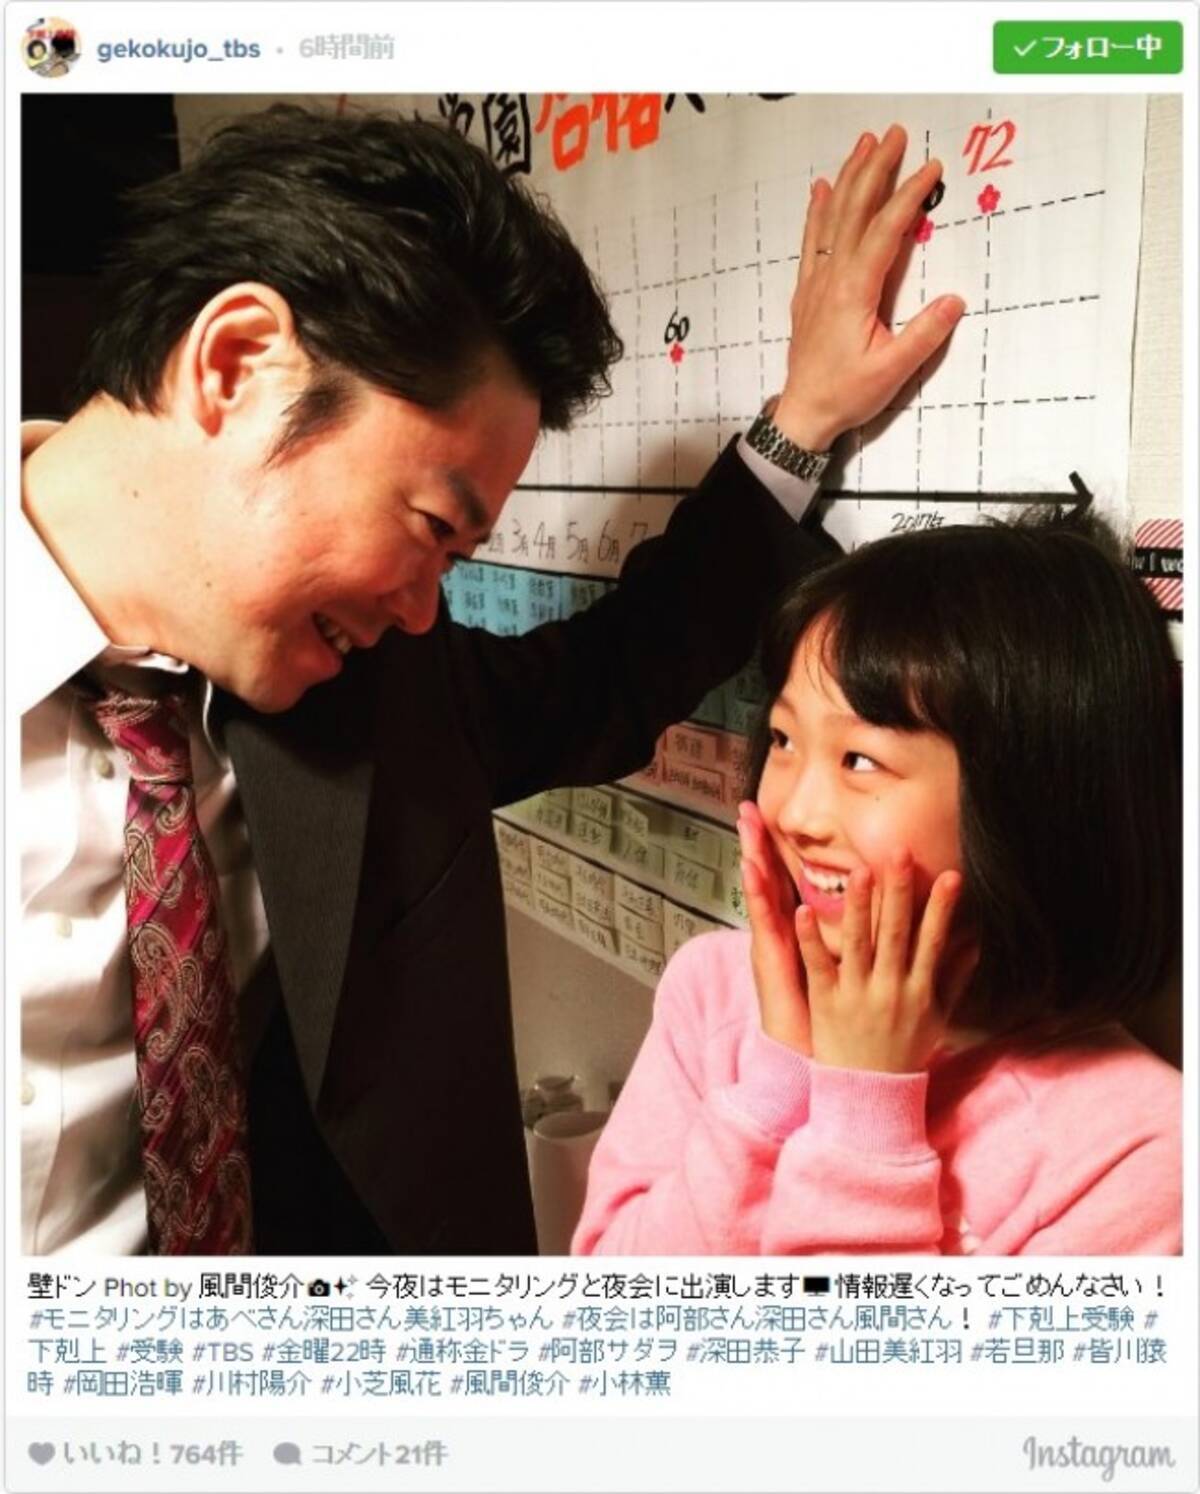 風間俊介 阿部サダヲの壁ドンを激写 お父さん 相手は娘です とツッコミ反響 17年1月13日 エキサイトニュース